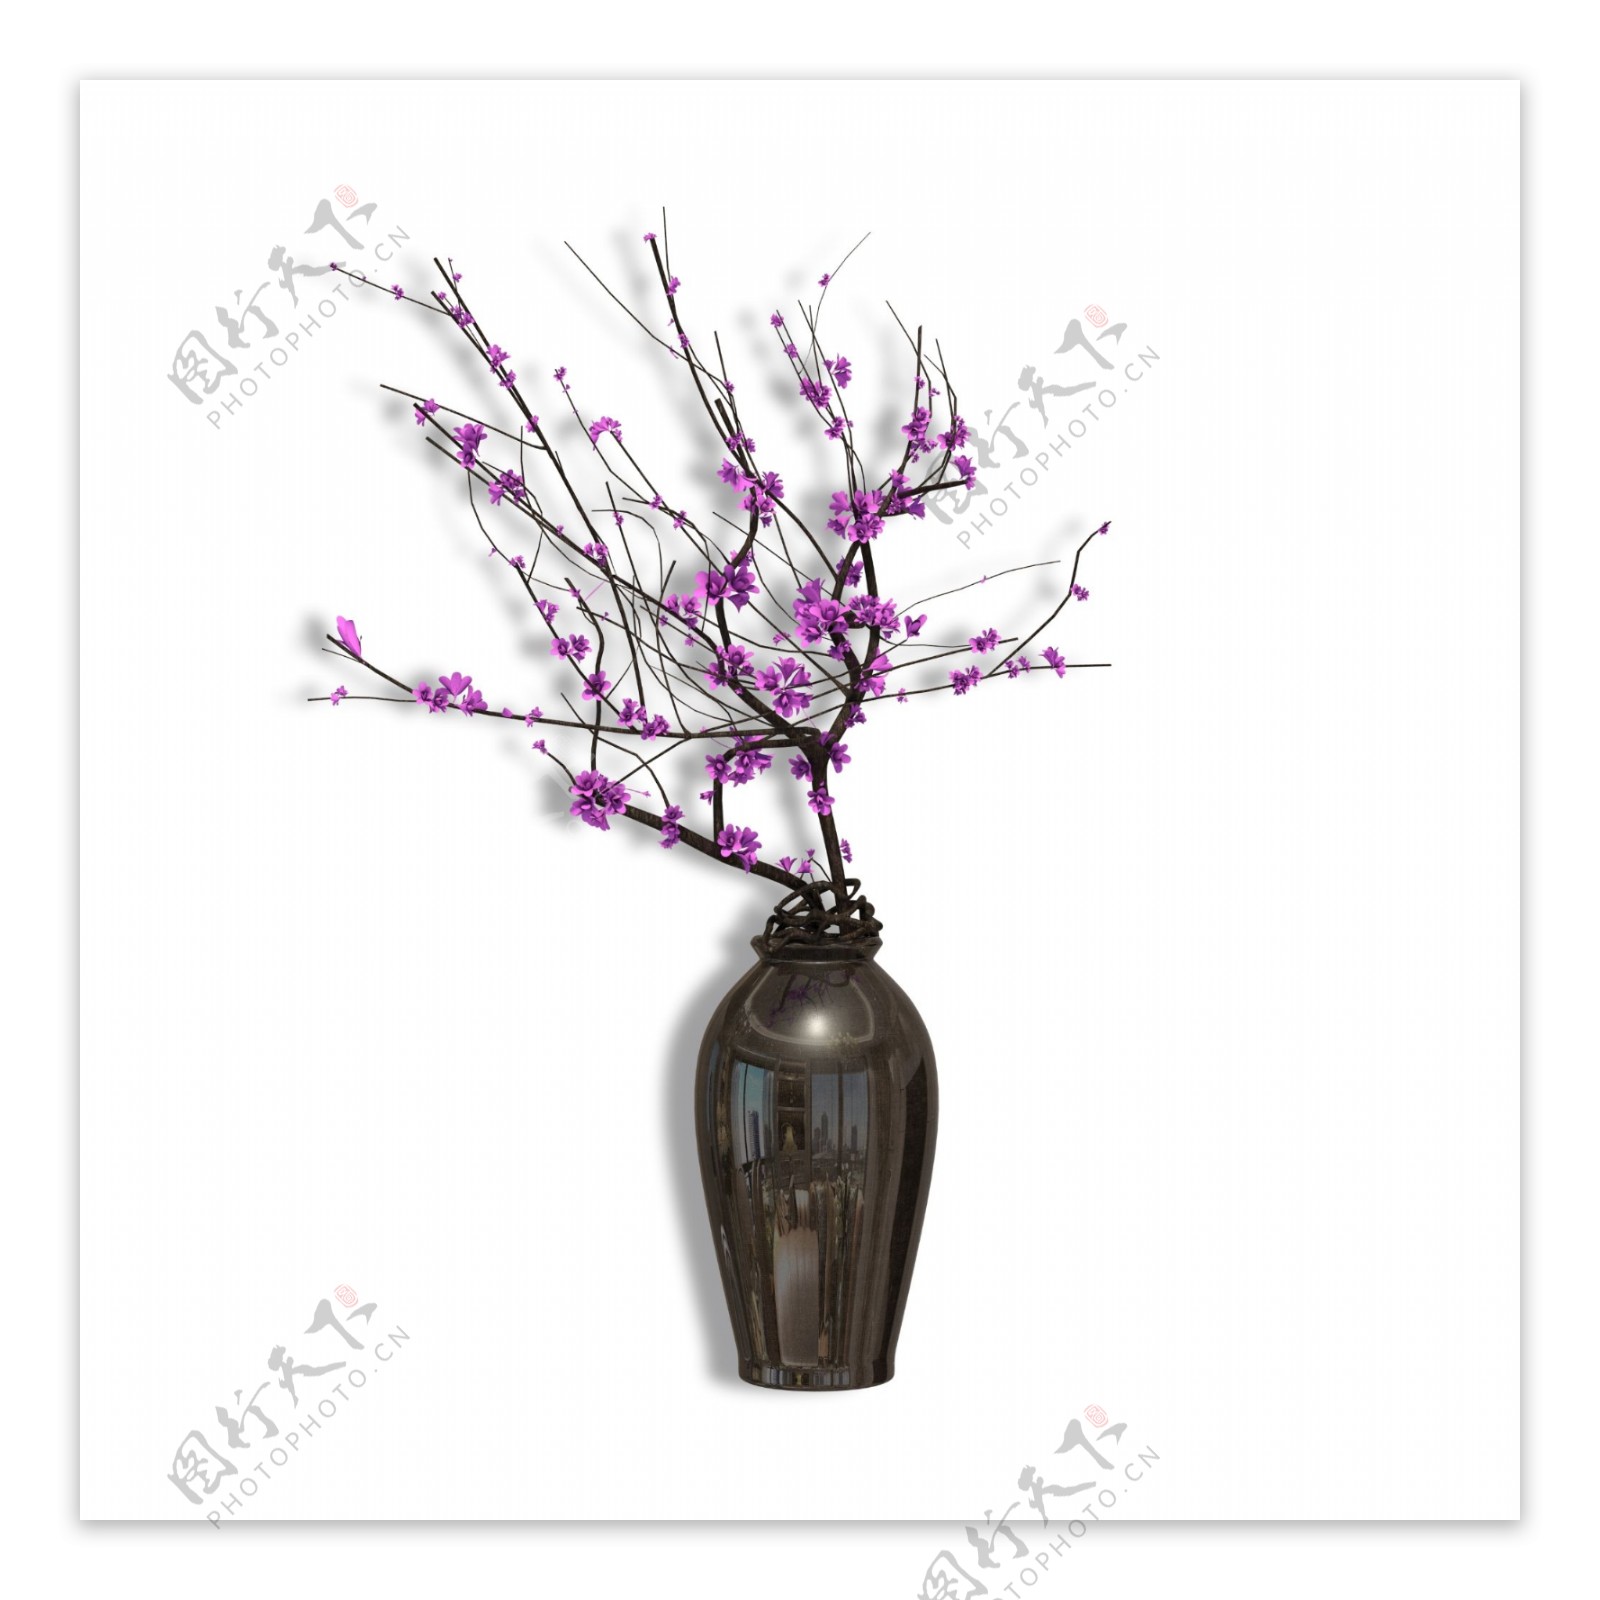 褐色花瓶紫色梅花